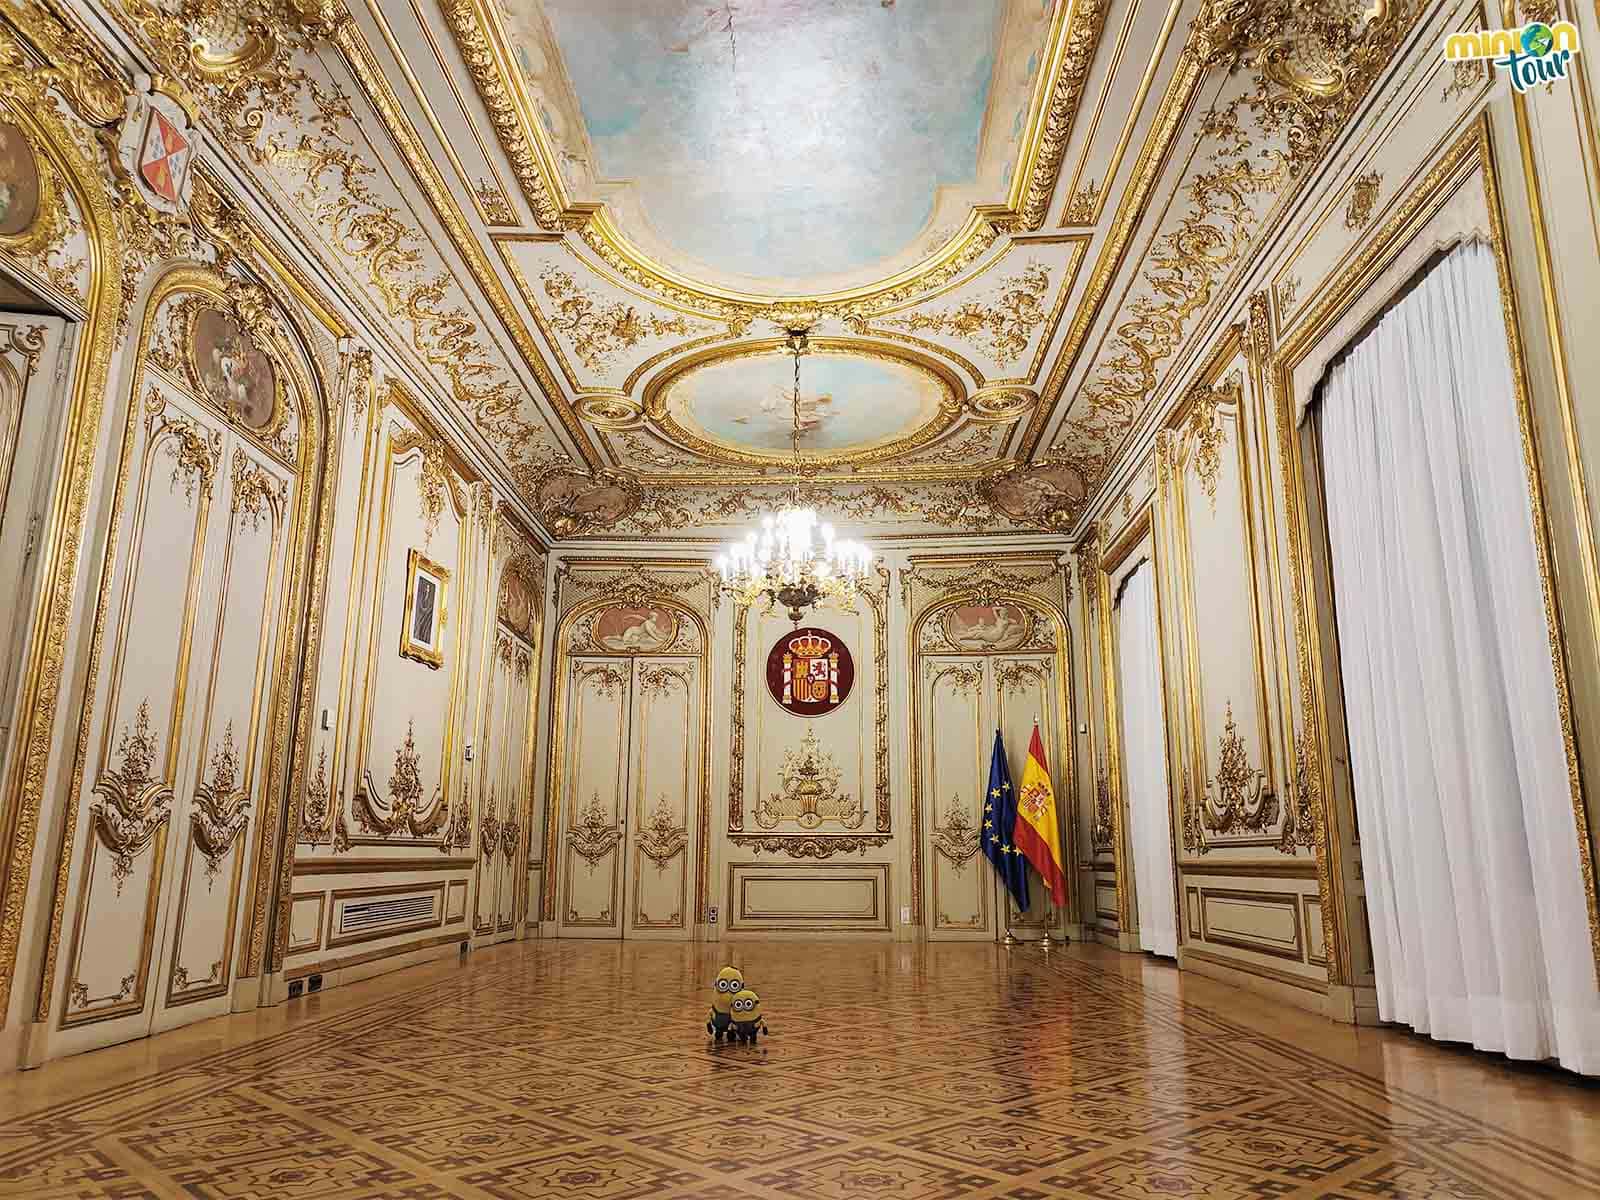 Este es el salón principal del Palacio de Parcent